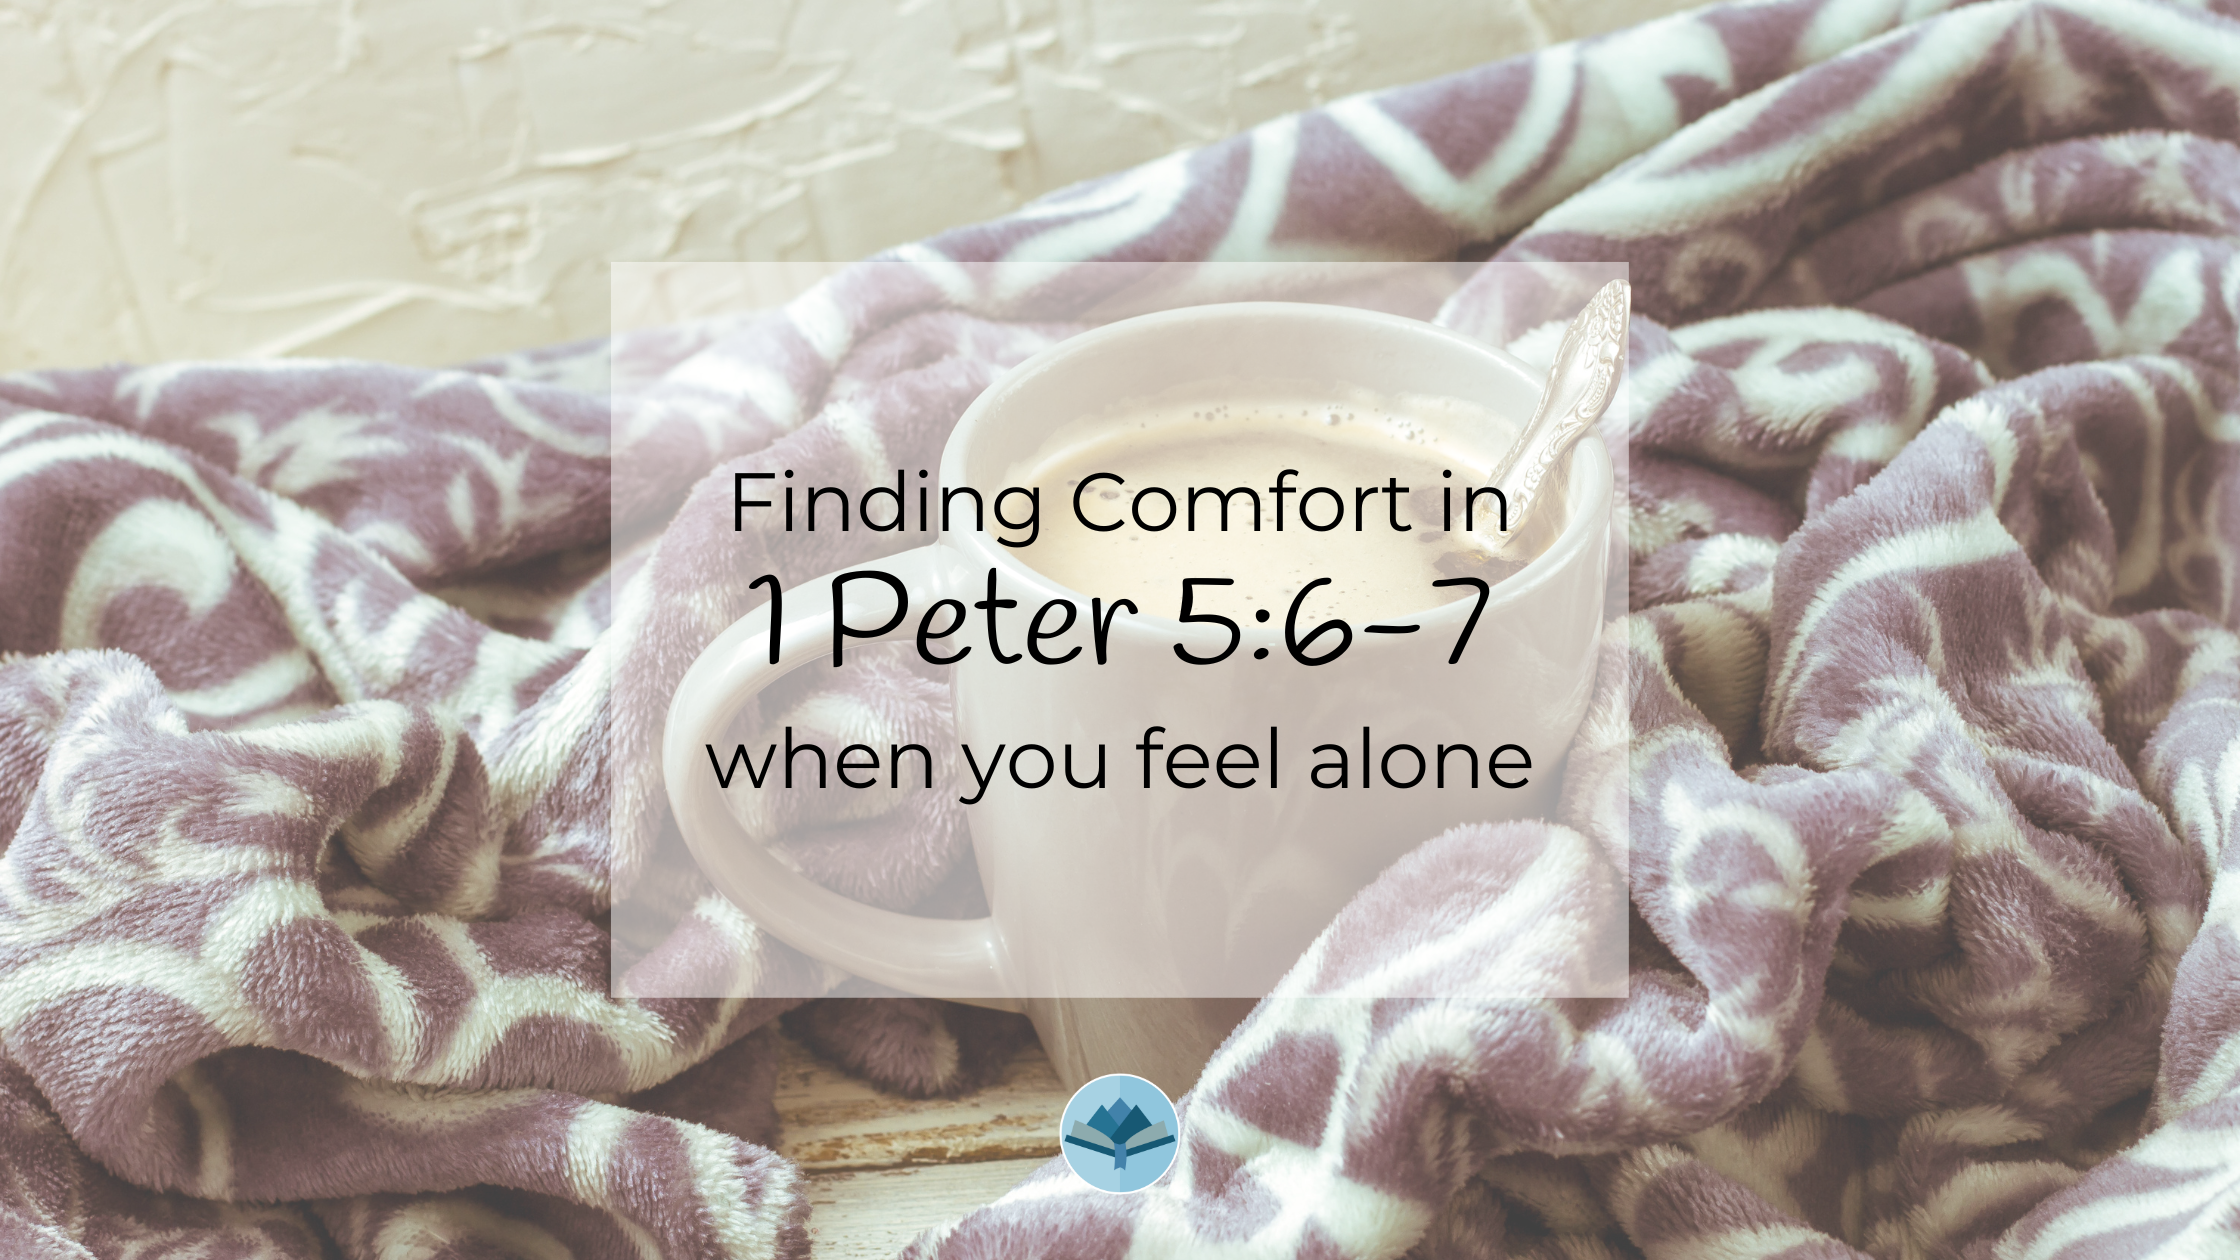 Finding Comfort in 1 Peter 5:6-7